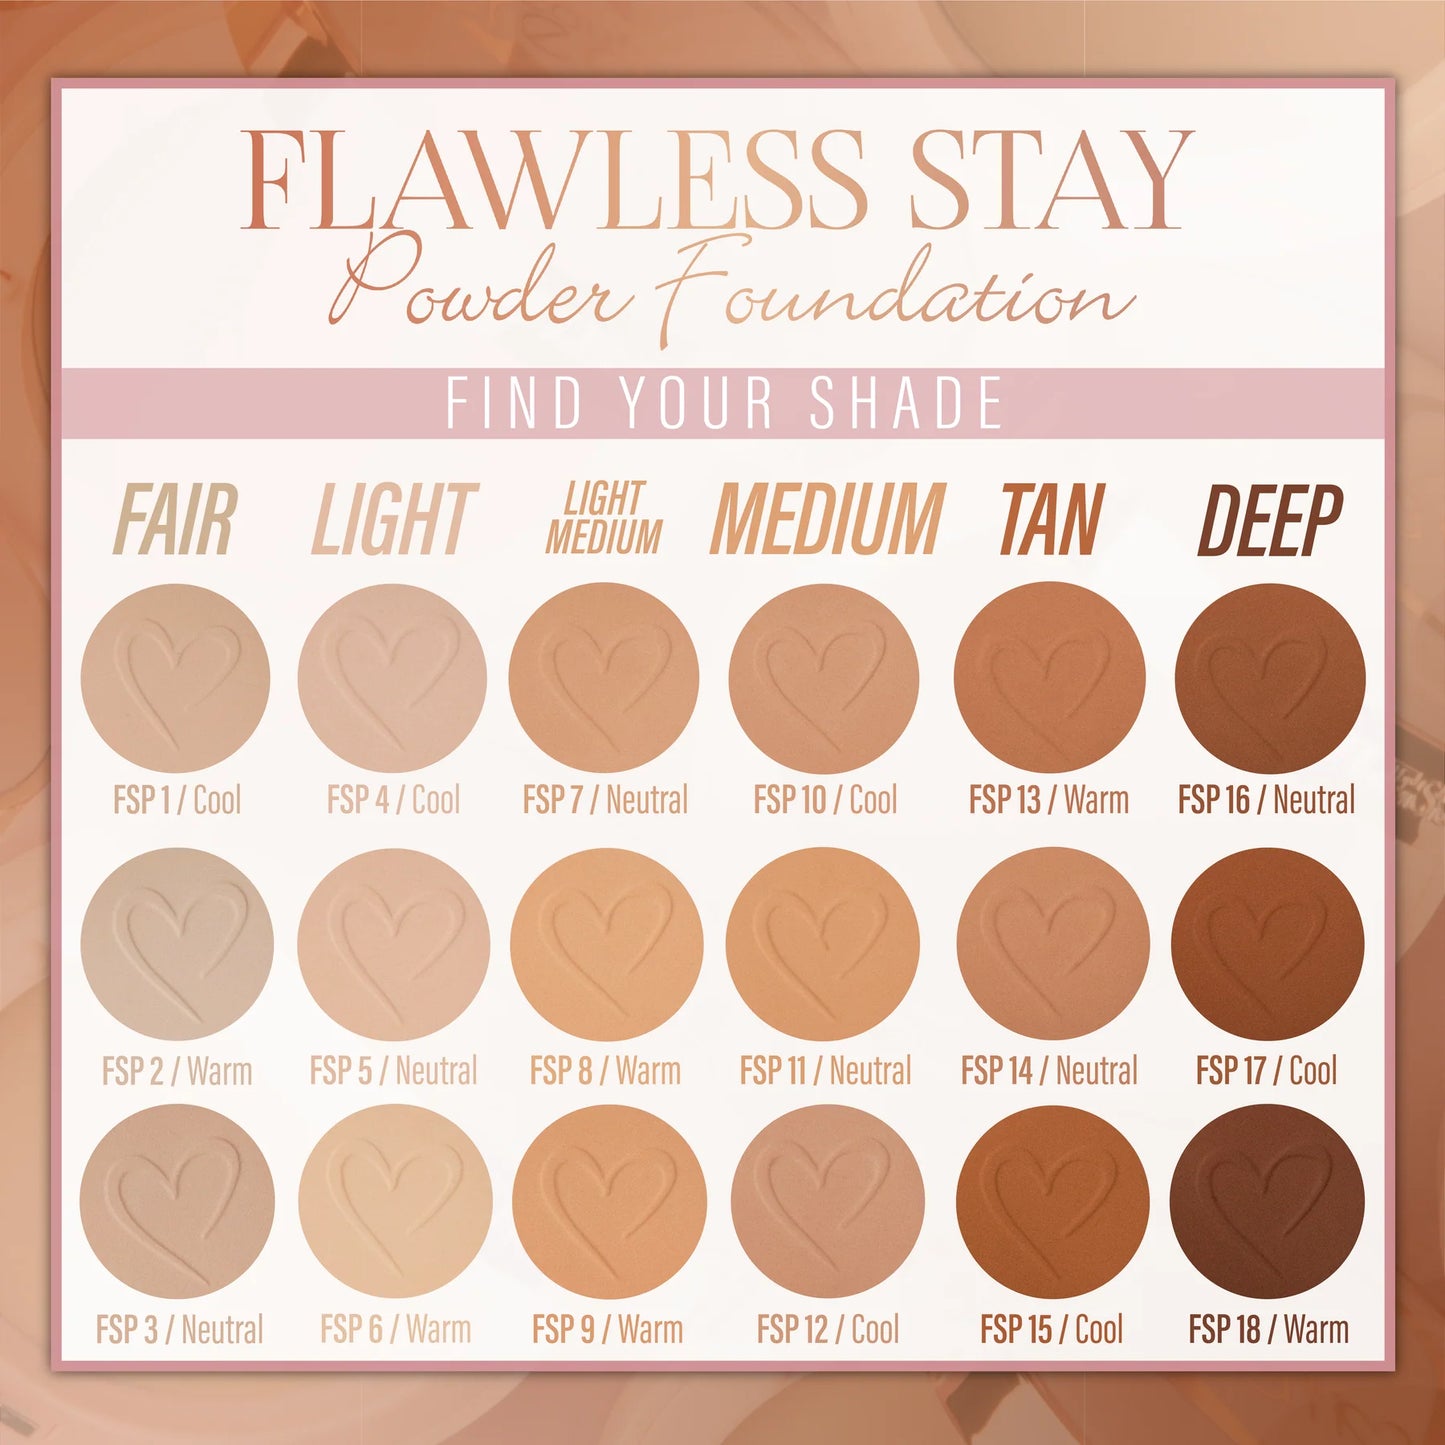 8.0 - Flawless Stay Powder Foundation